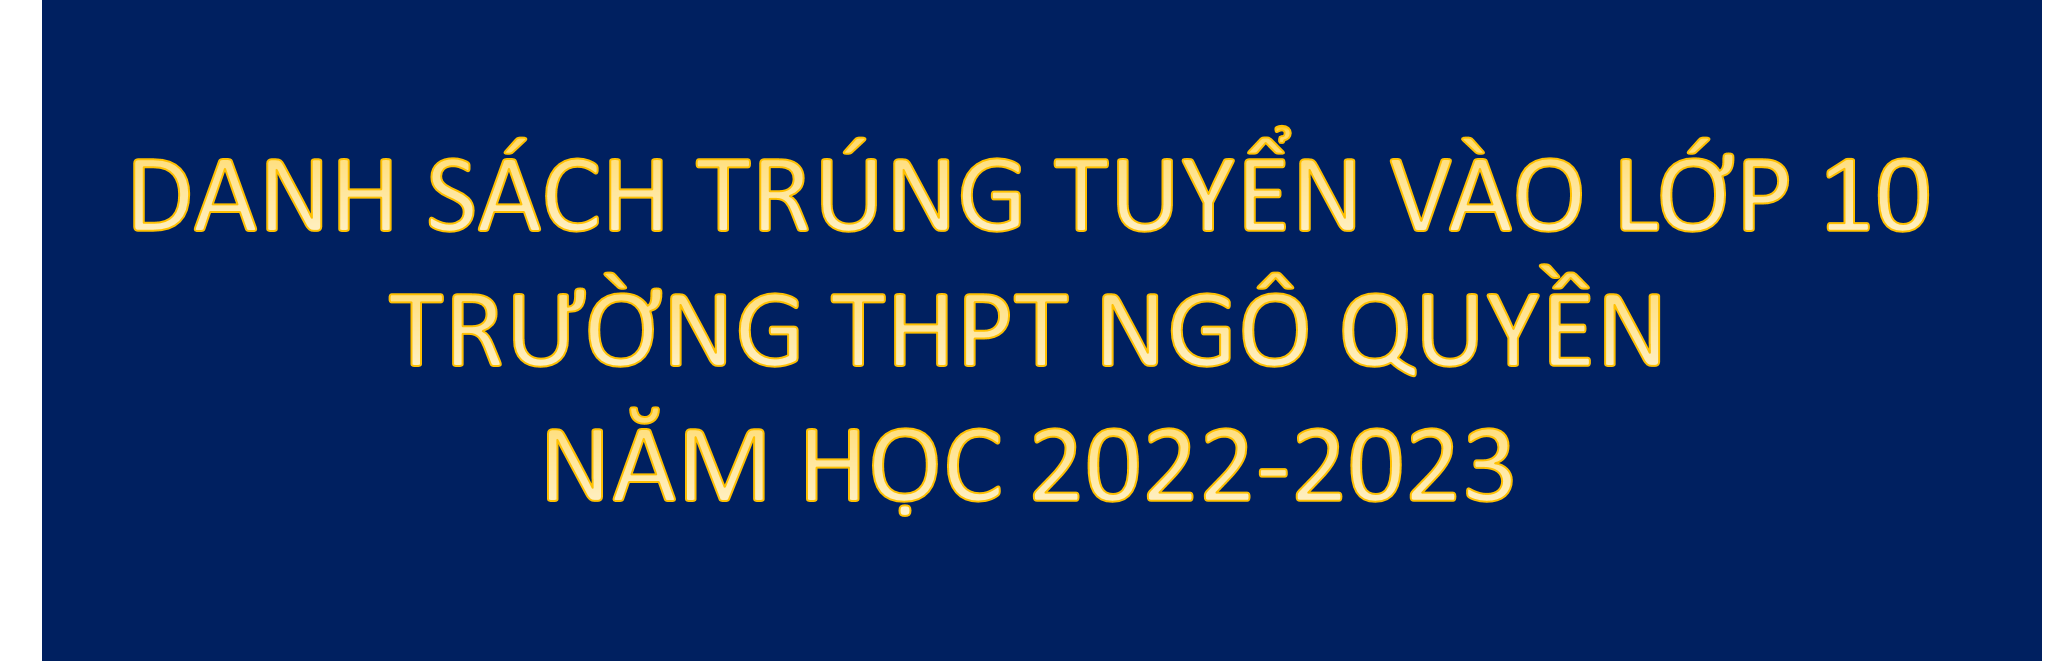 Thông báo danh sách trúng tuyển lớp 10 trường THPT Ngô Quyền,năm học 2022-2023